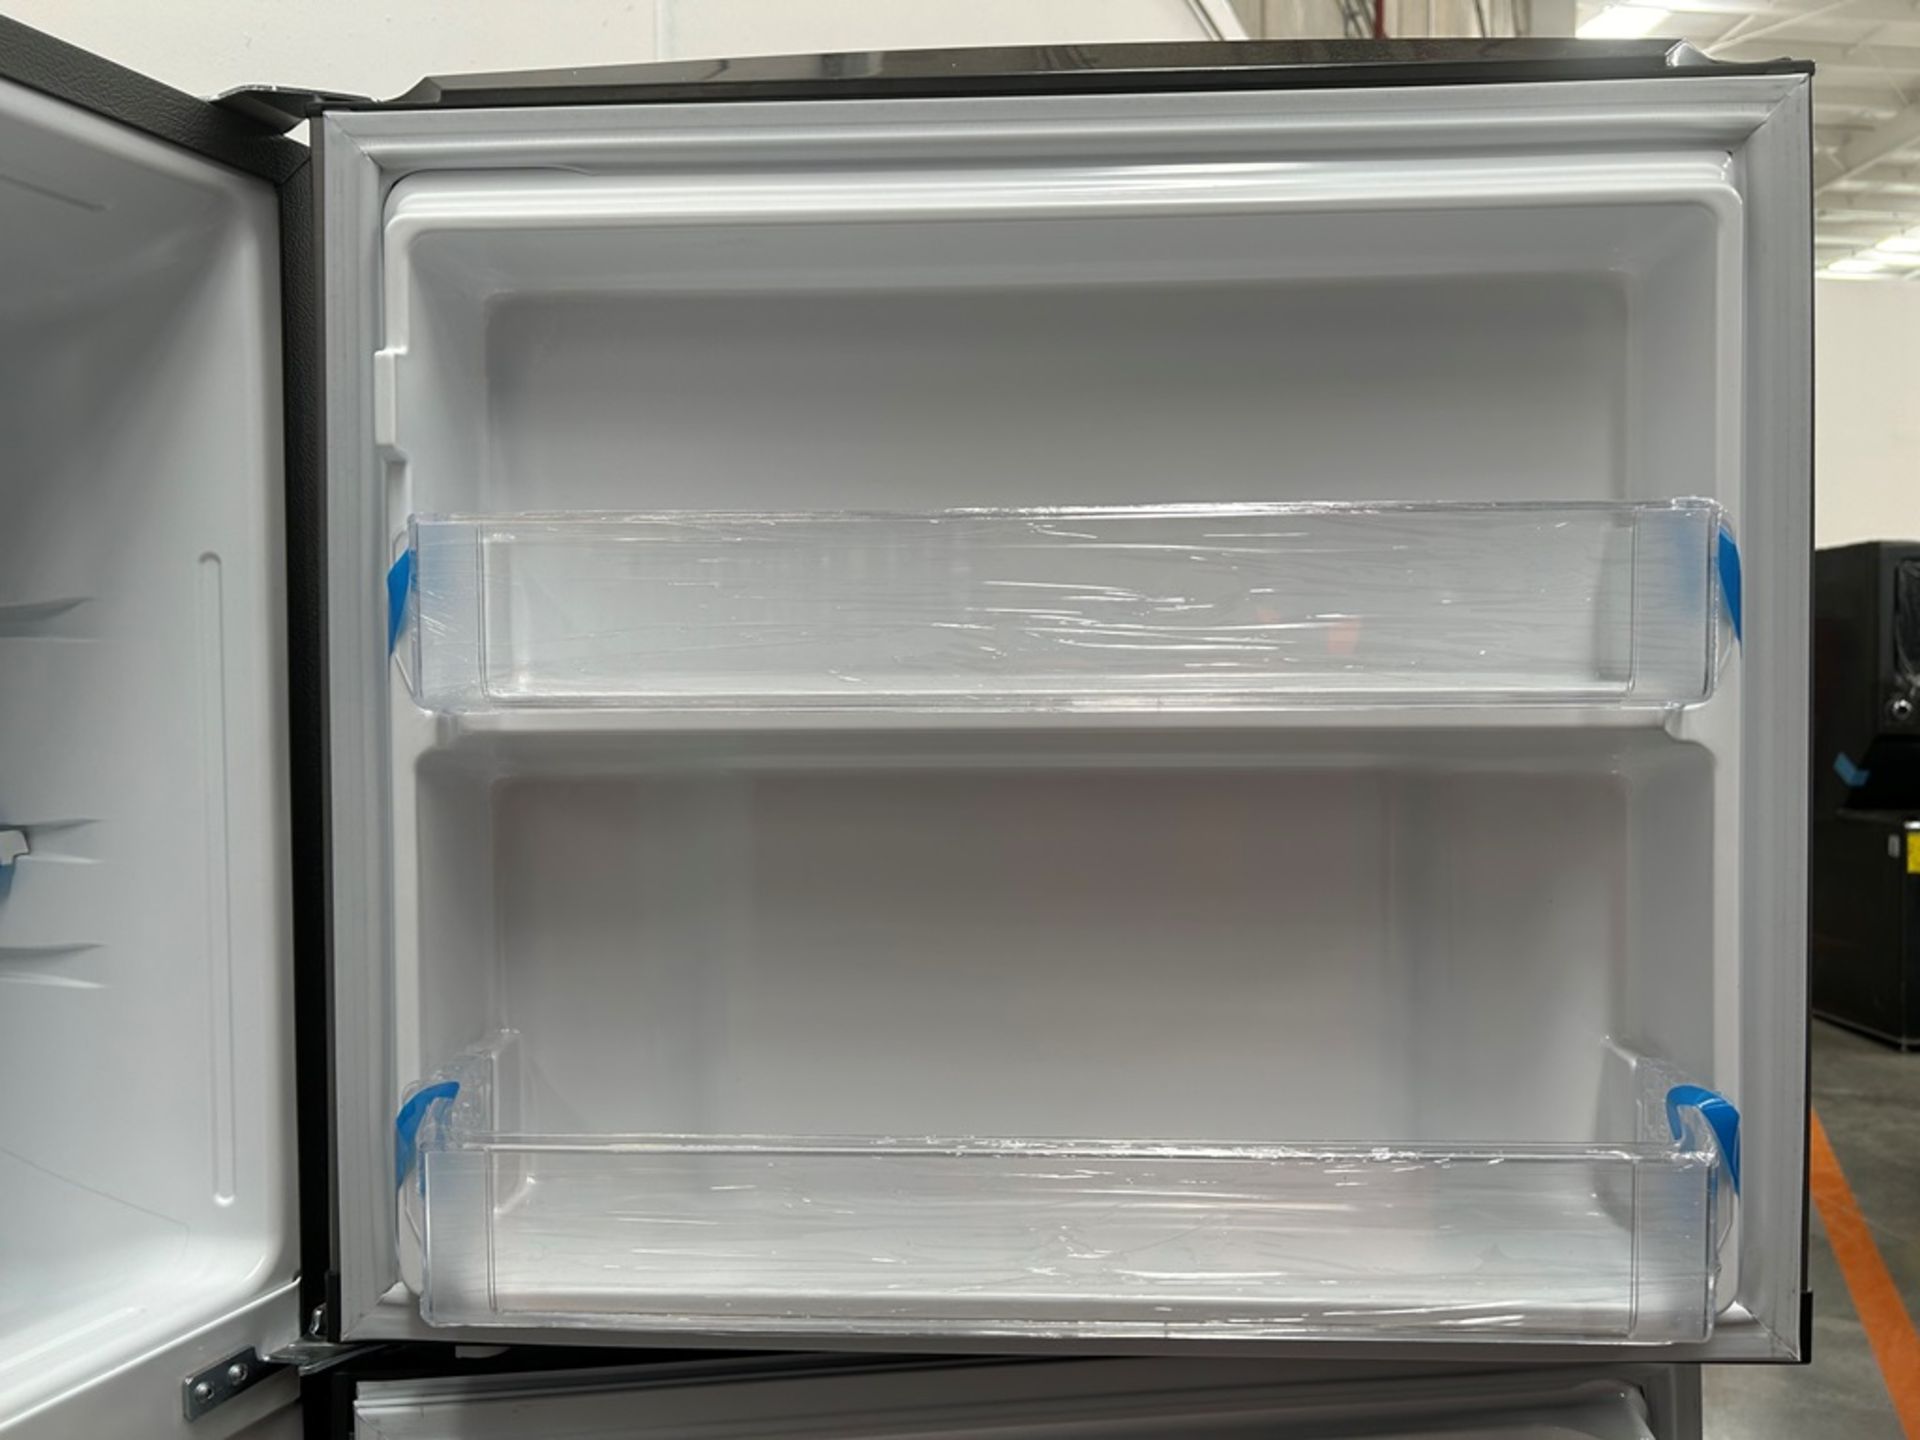 Lote de 2 refrigeradores contiene: 1 refrigerador Marca MABE, Modelo RME360FVMRMA, Serie 816455, Co - Image 13 of 18